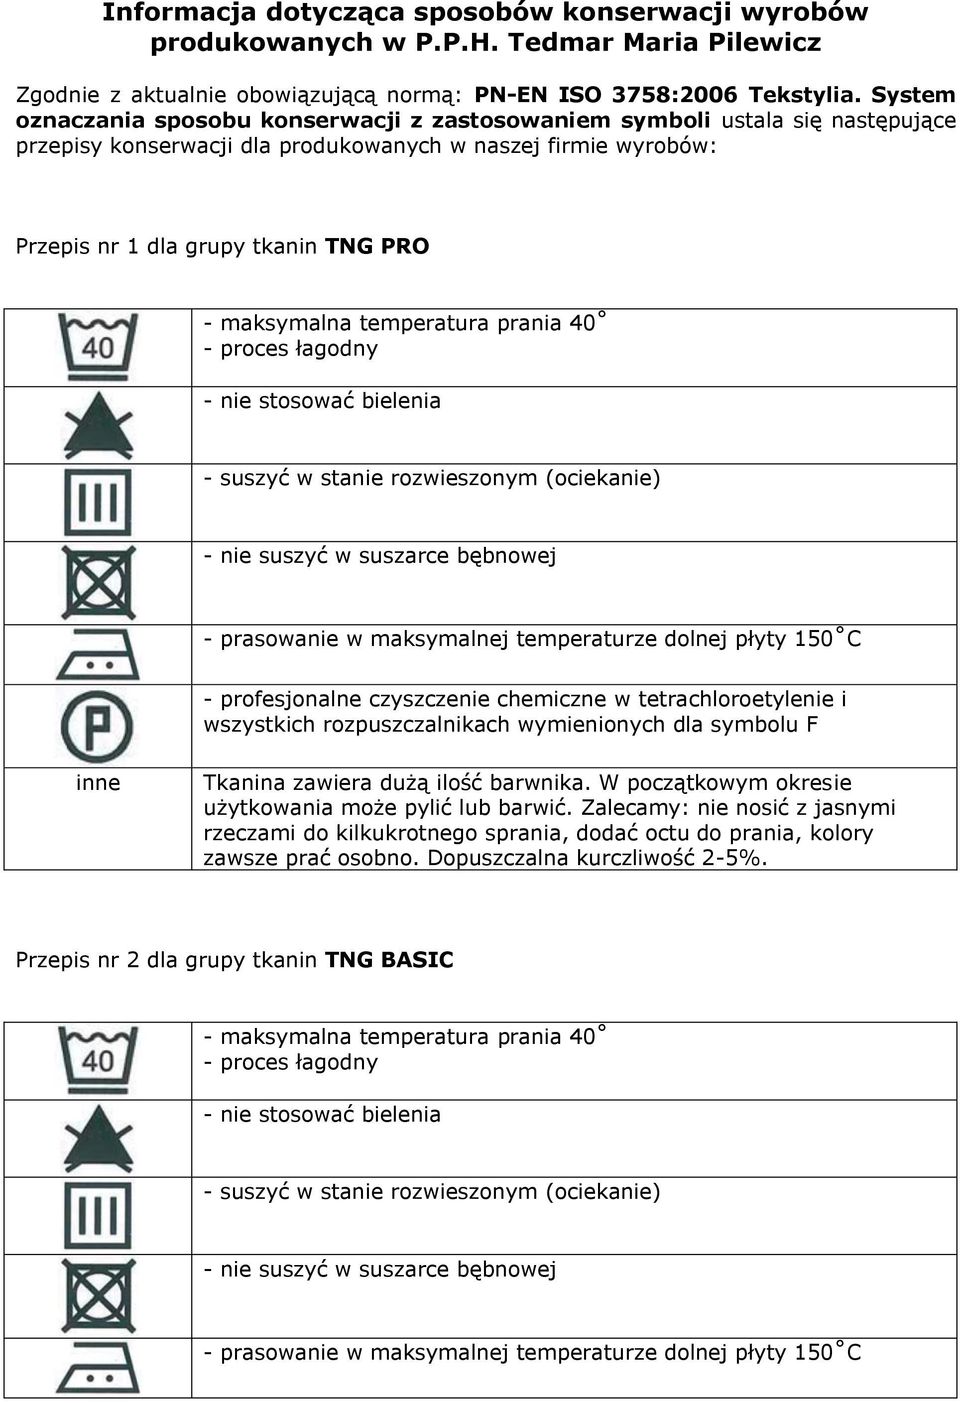 System oznaczania sposobu konserwacji z zastosowaniem symboli ustala się następujące przepisy konserwacji dla produkowanych w naszej firmie wyrobów: Przepis